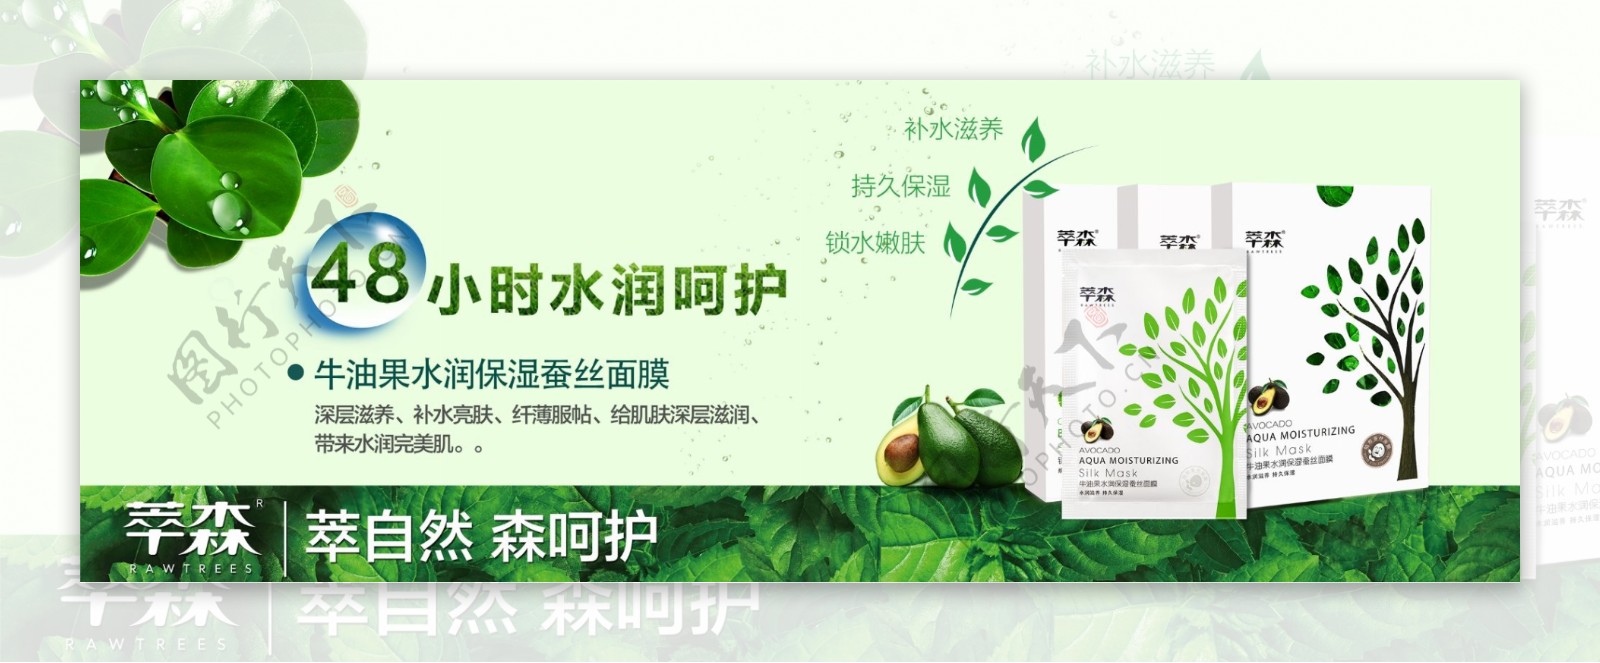 化妆品植物绿色森林面膜详情海报